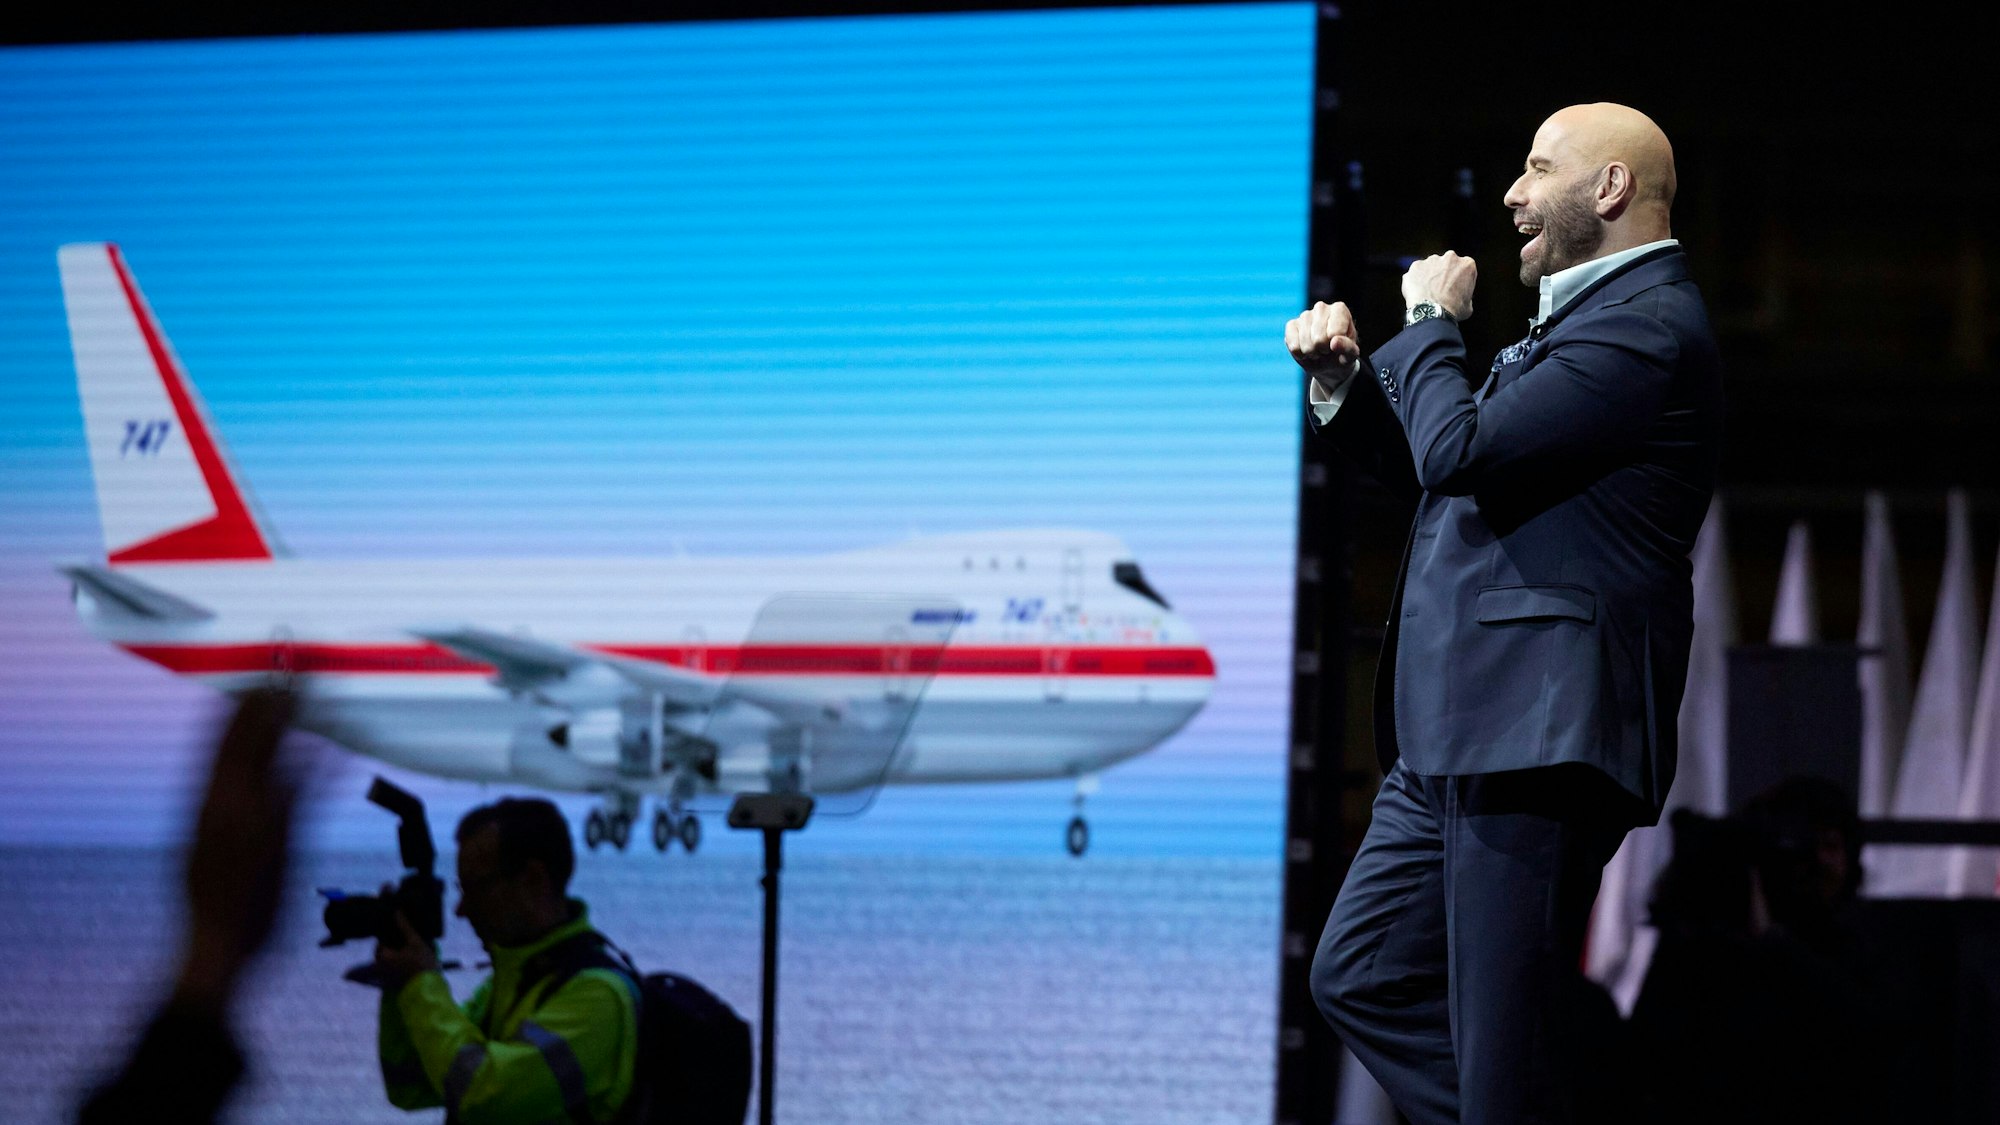 Der Schauspieler und Pilot John Travolta spricht während einer Zeremonie zur Auslieferung des letzten Boeing 747 Jumbo-Jets.